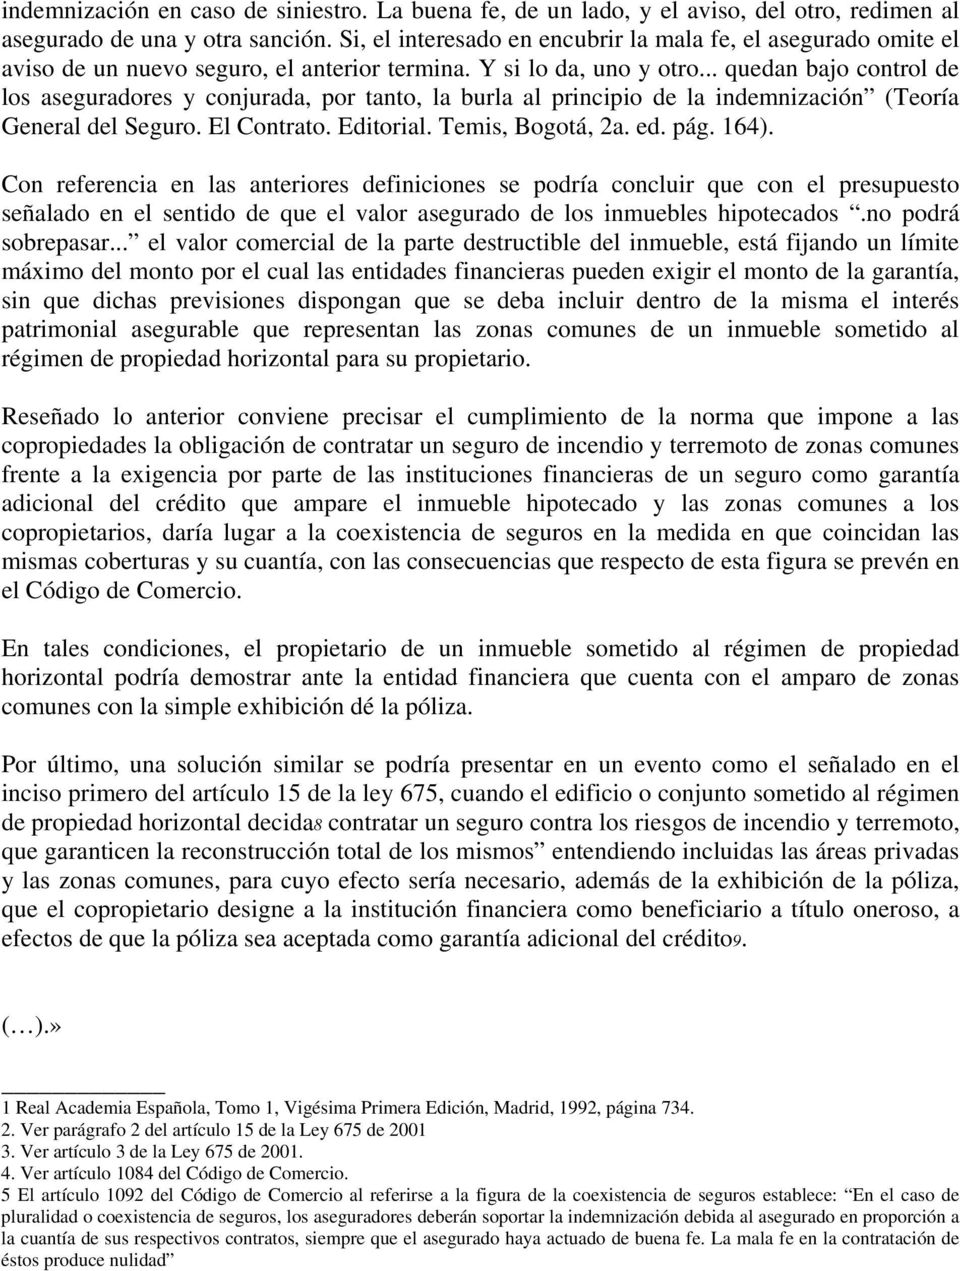 .. quedan bajo control de los aseguradores y conjurada, por tanto, la burla al principio de la indemnización (Teoría General del Seguro. El Contrato. Editorial. Temis, Bogotá, 2a. ed. pág. 164).